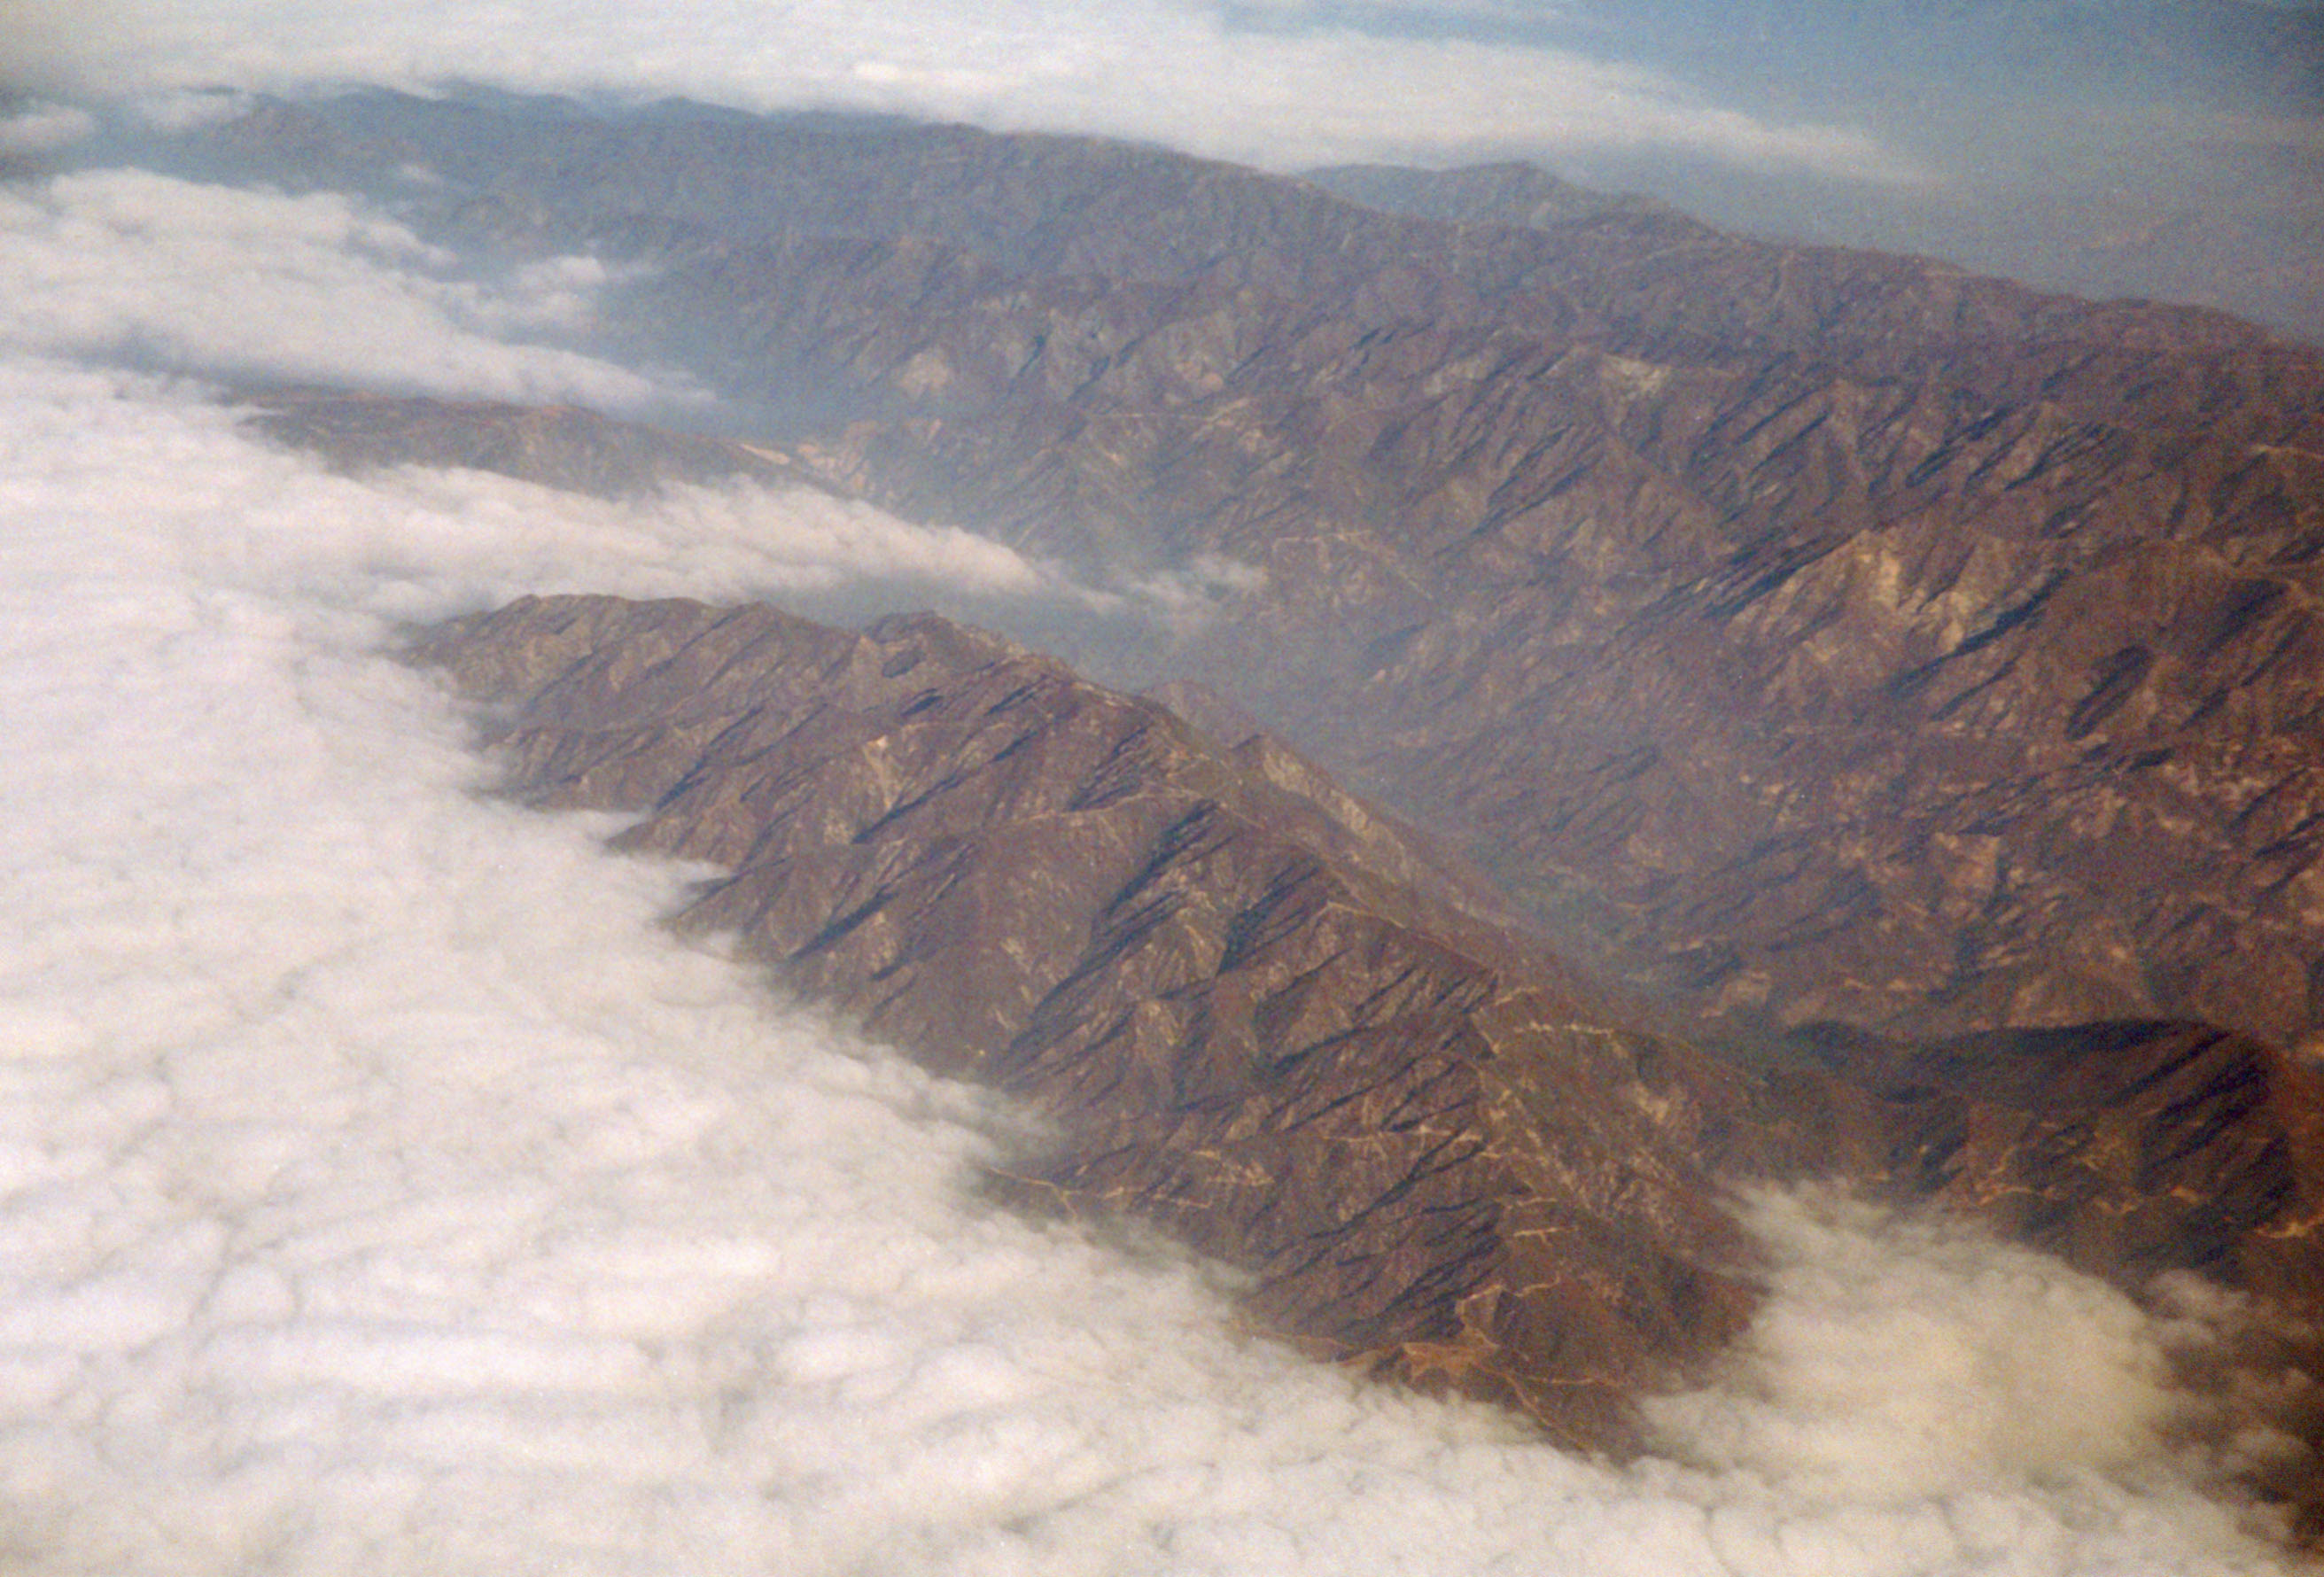 fotografia, material, livra, ajardine, imagine, proveja fotografia,Sierra Nevada montanhas, gama montesa, montanha, nuvem, 